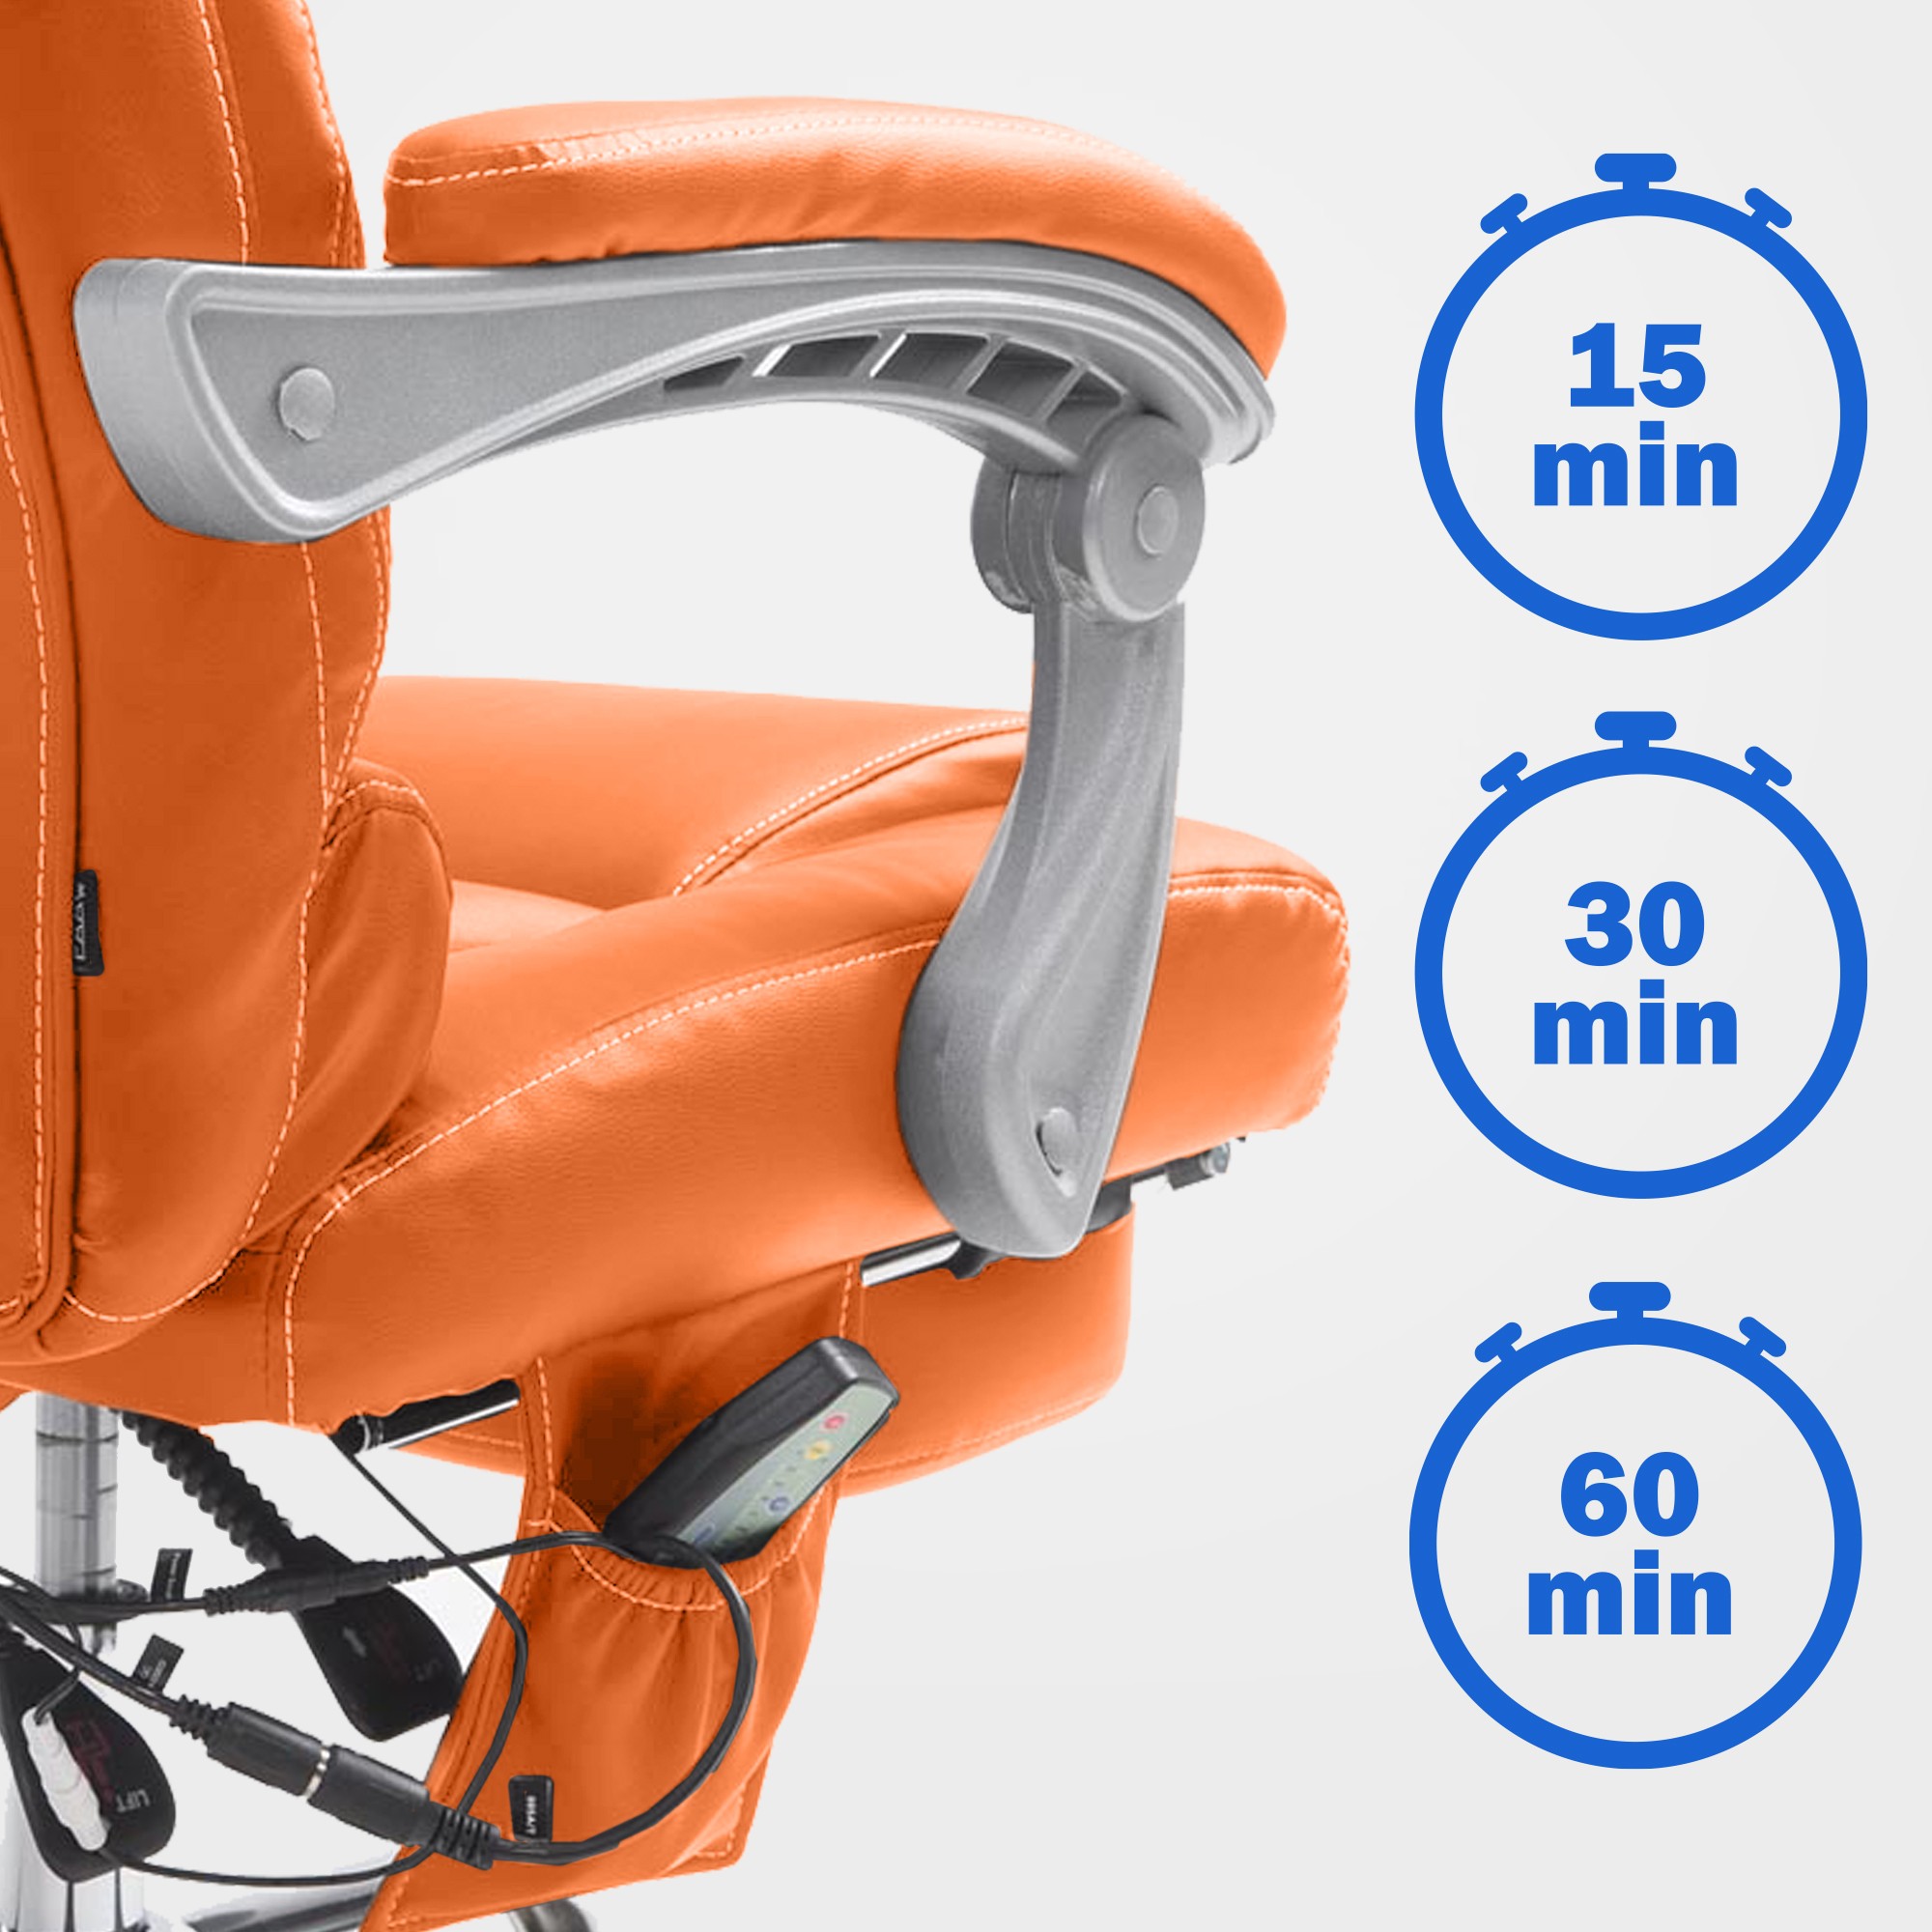 Bürostuhl Pacific mit Massagefunktion Kunstleder orange